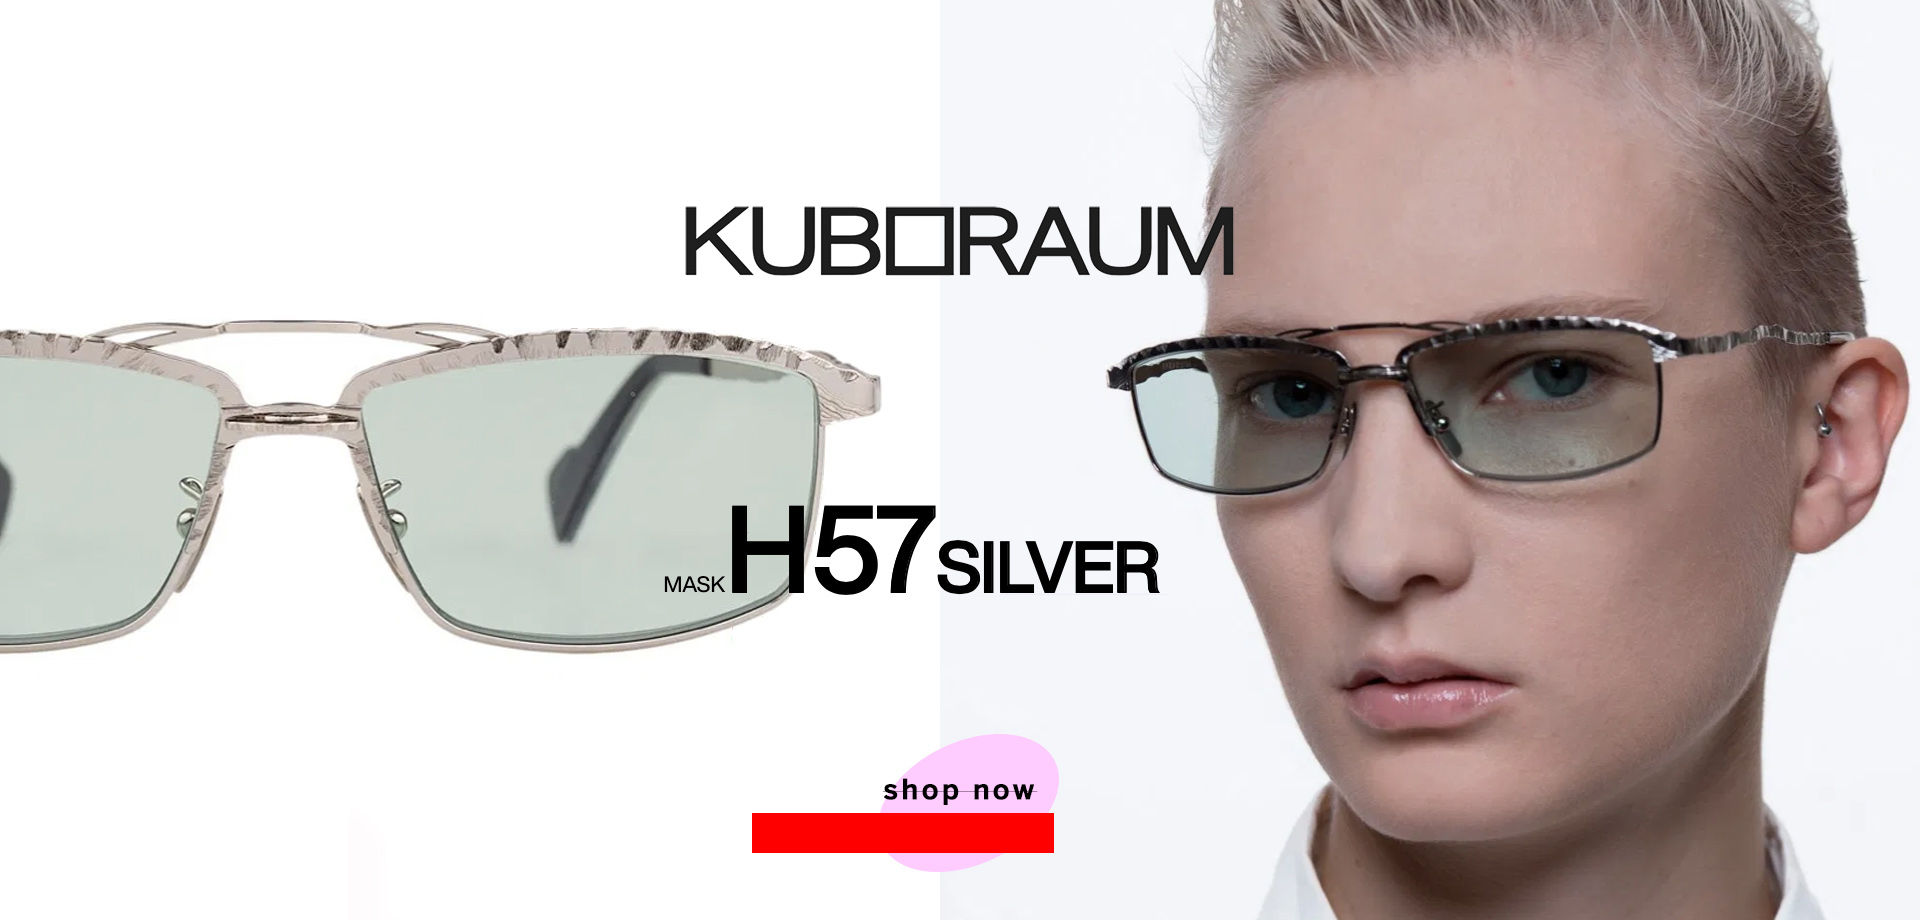 Occhiale da sole metallo rettangolare doppio ponte KUBORAUM Mask H57 argento